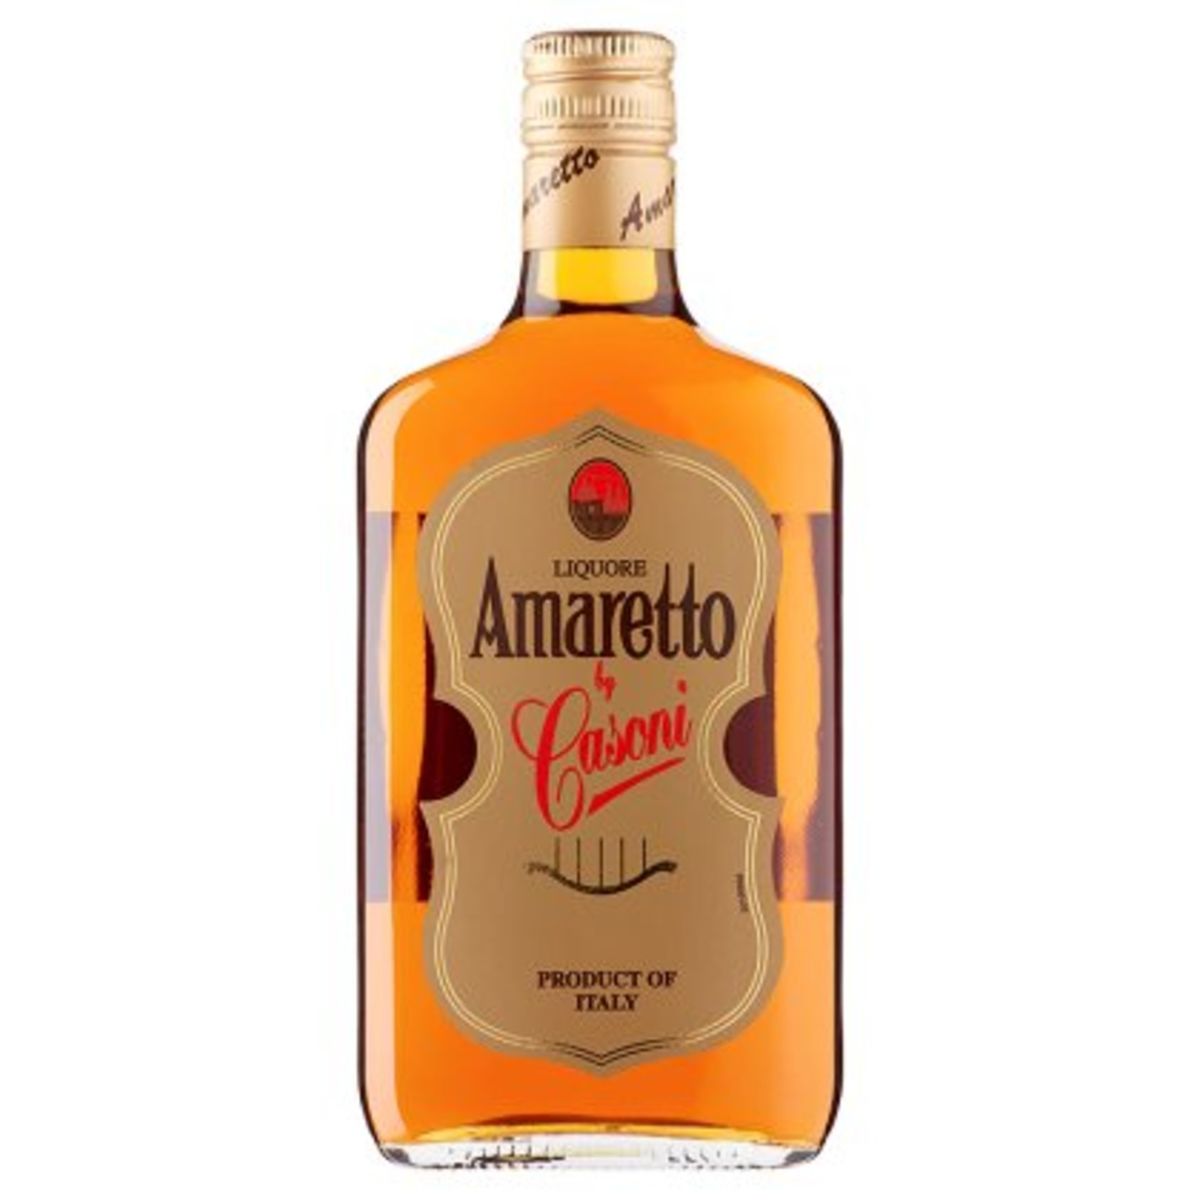 Amaretto Casoni liquore 70 cl